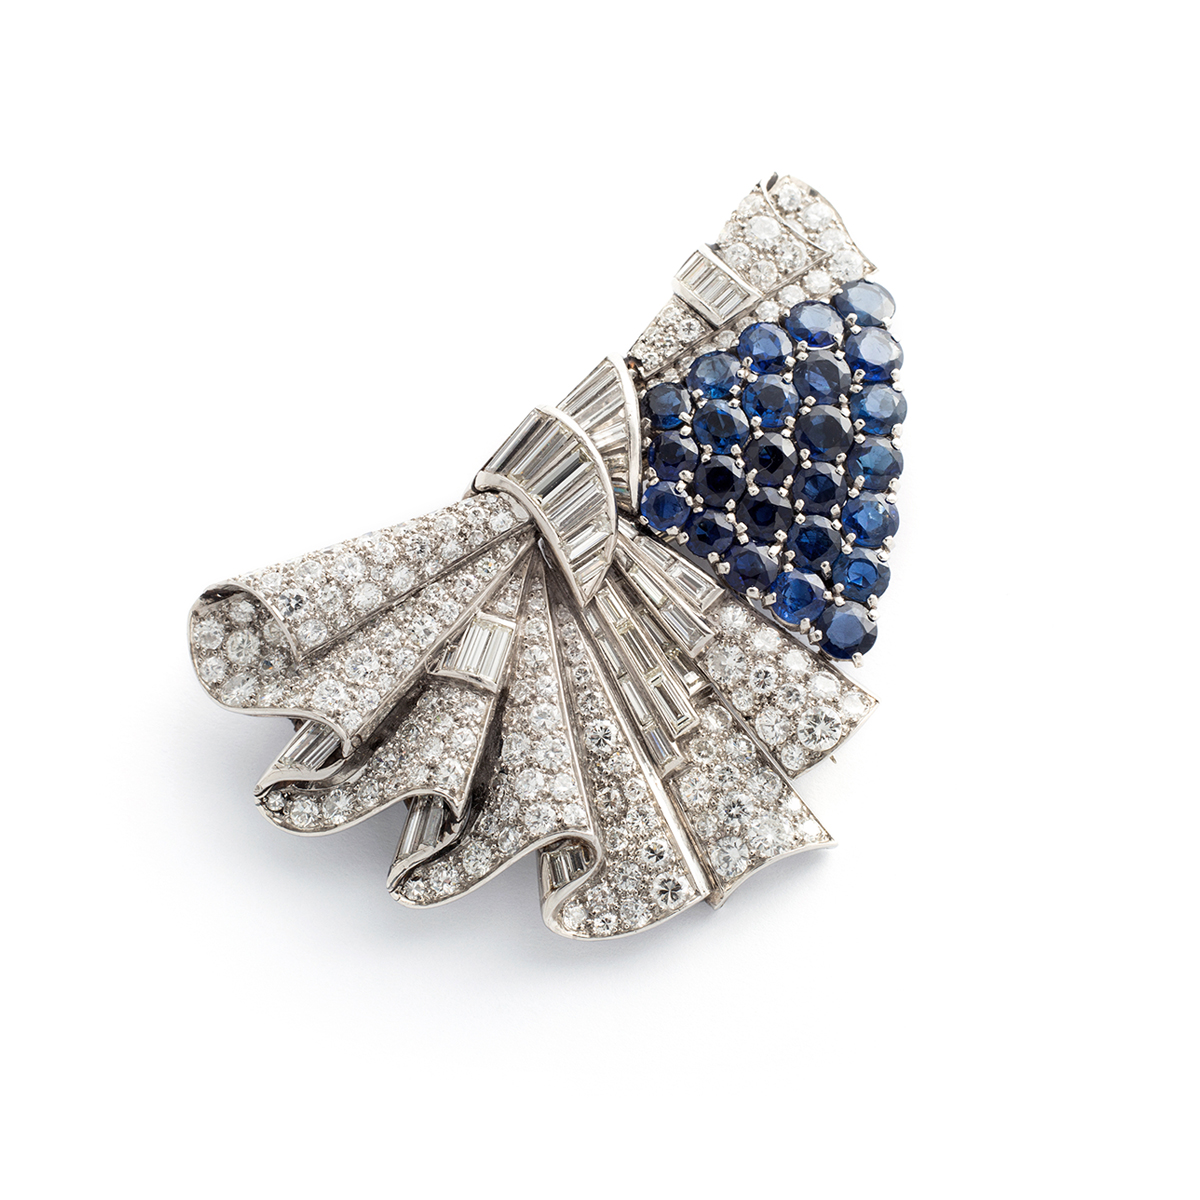 20c397_2-diamond-white-blue-sapphire-double-clip-art-deco-1930s-ostertag-cartier-van-cleef-arpels-janesich-mauboussin-boucheron-place-vendome-new-york-paris-couture-dress-brooch-clip-vint